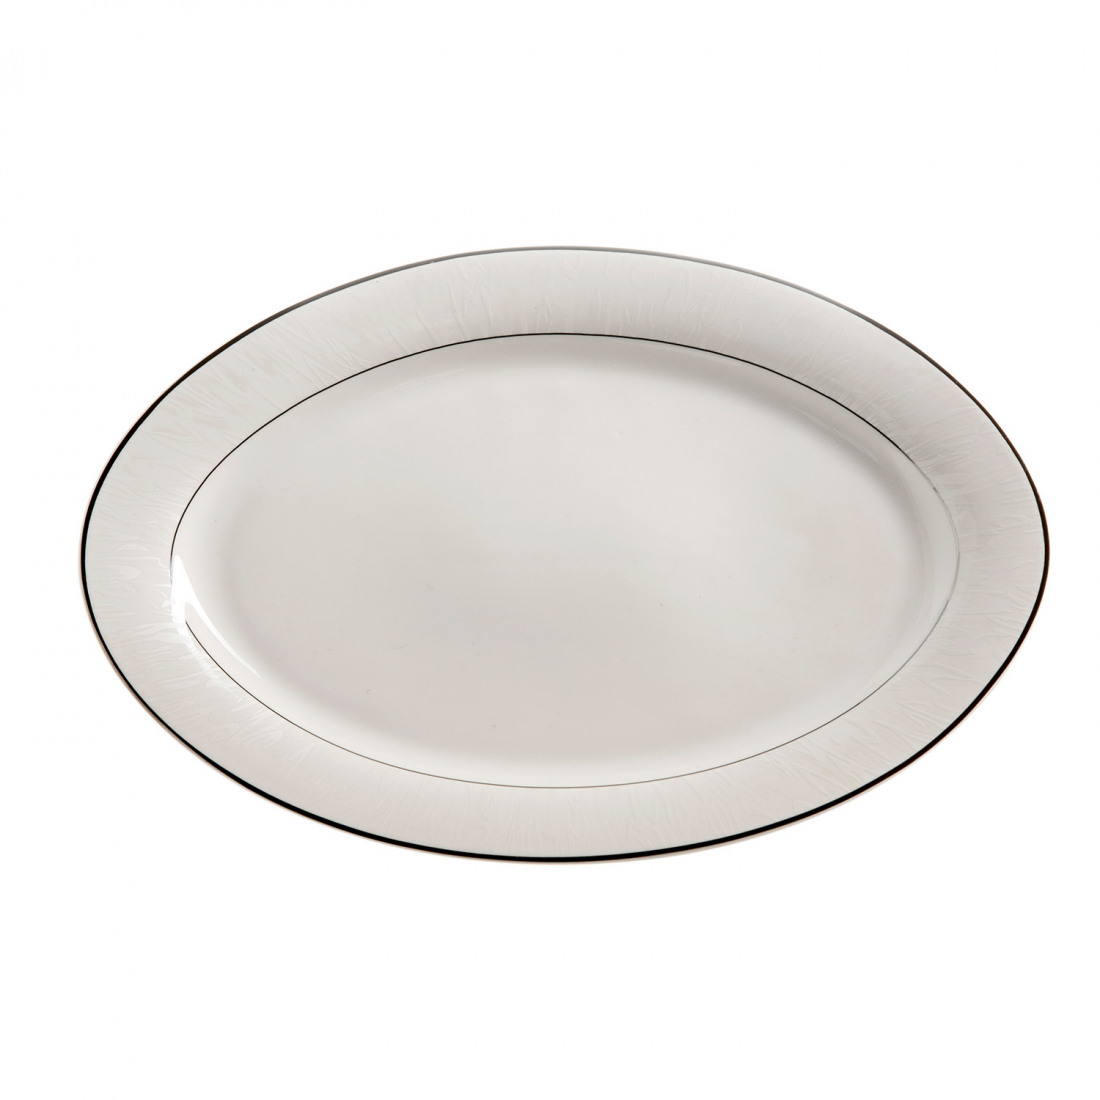 Oval Platter 35 cm